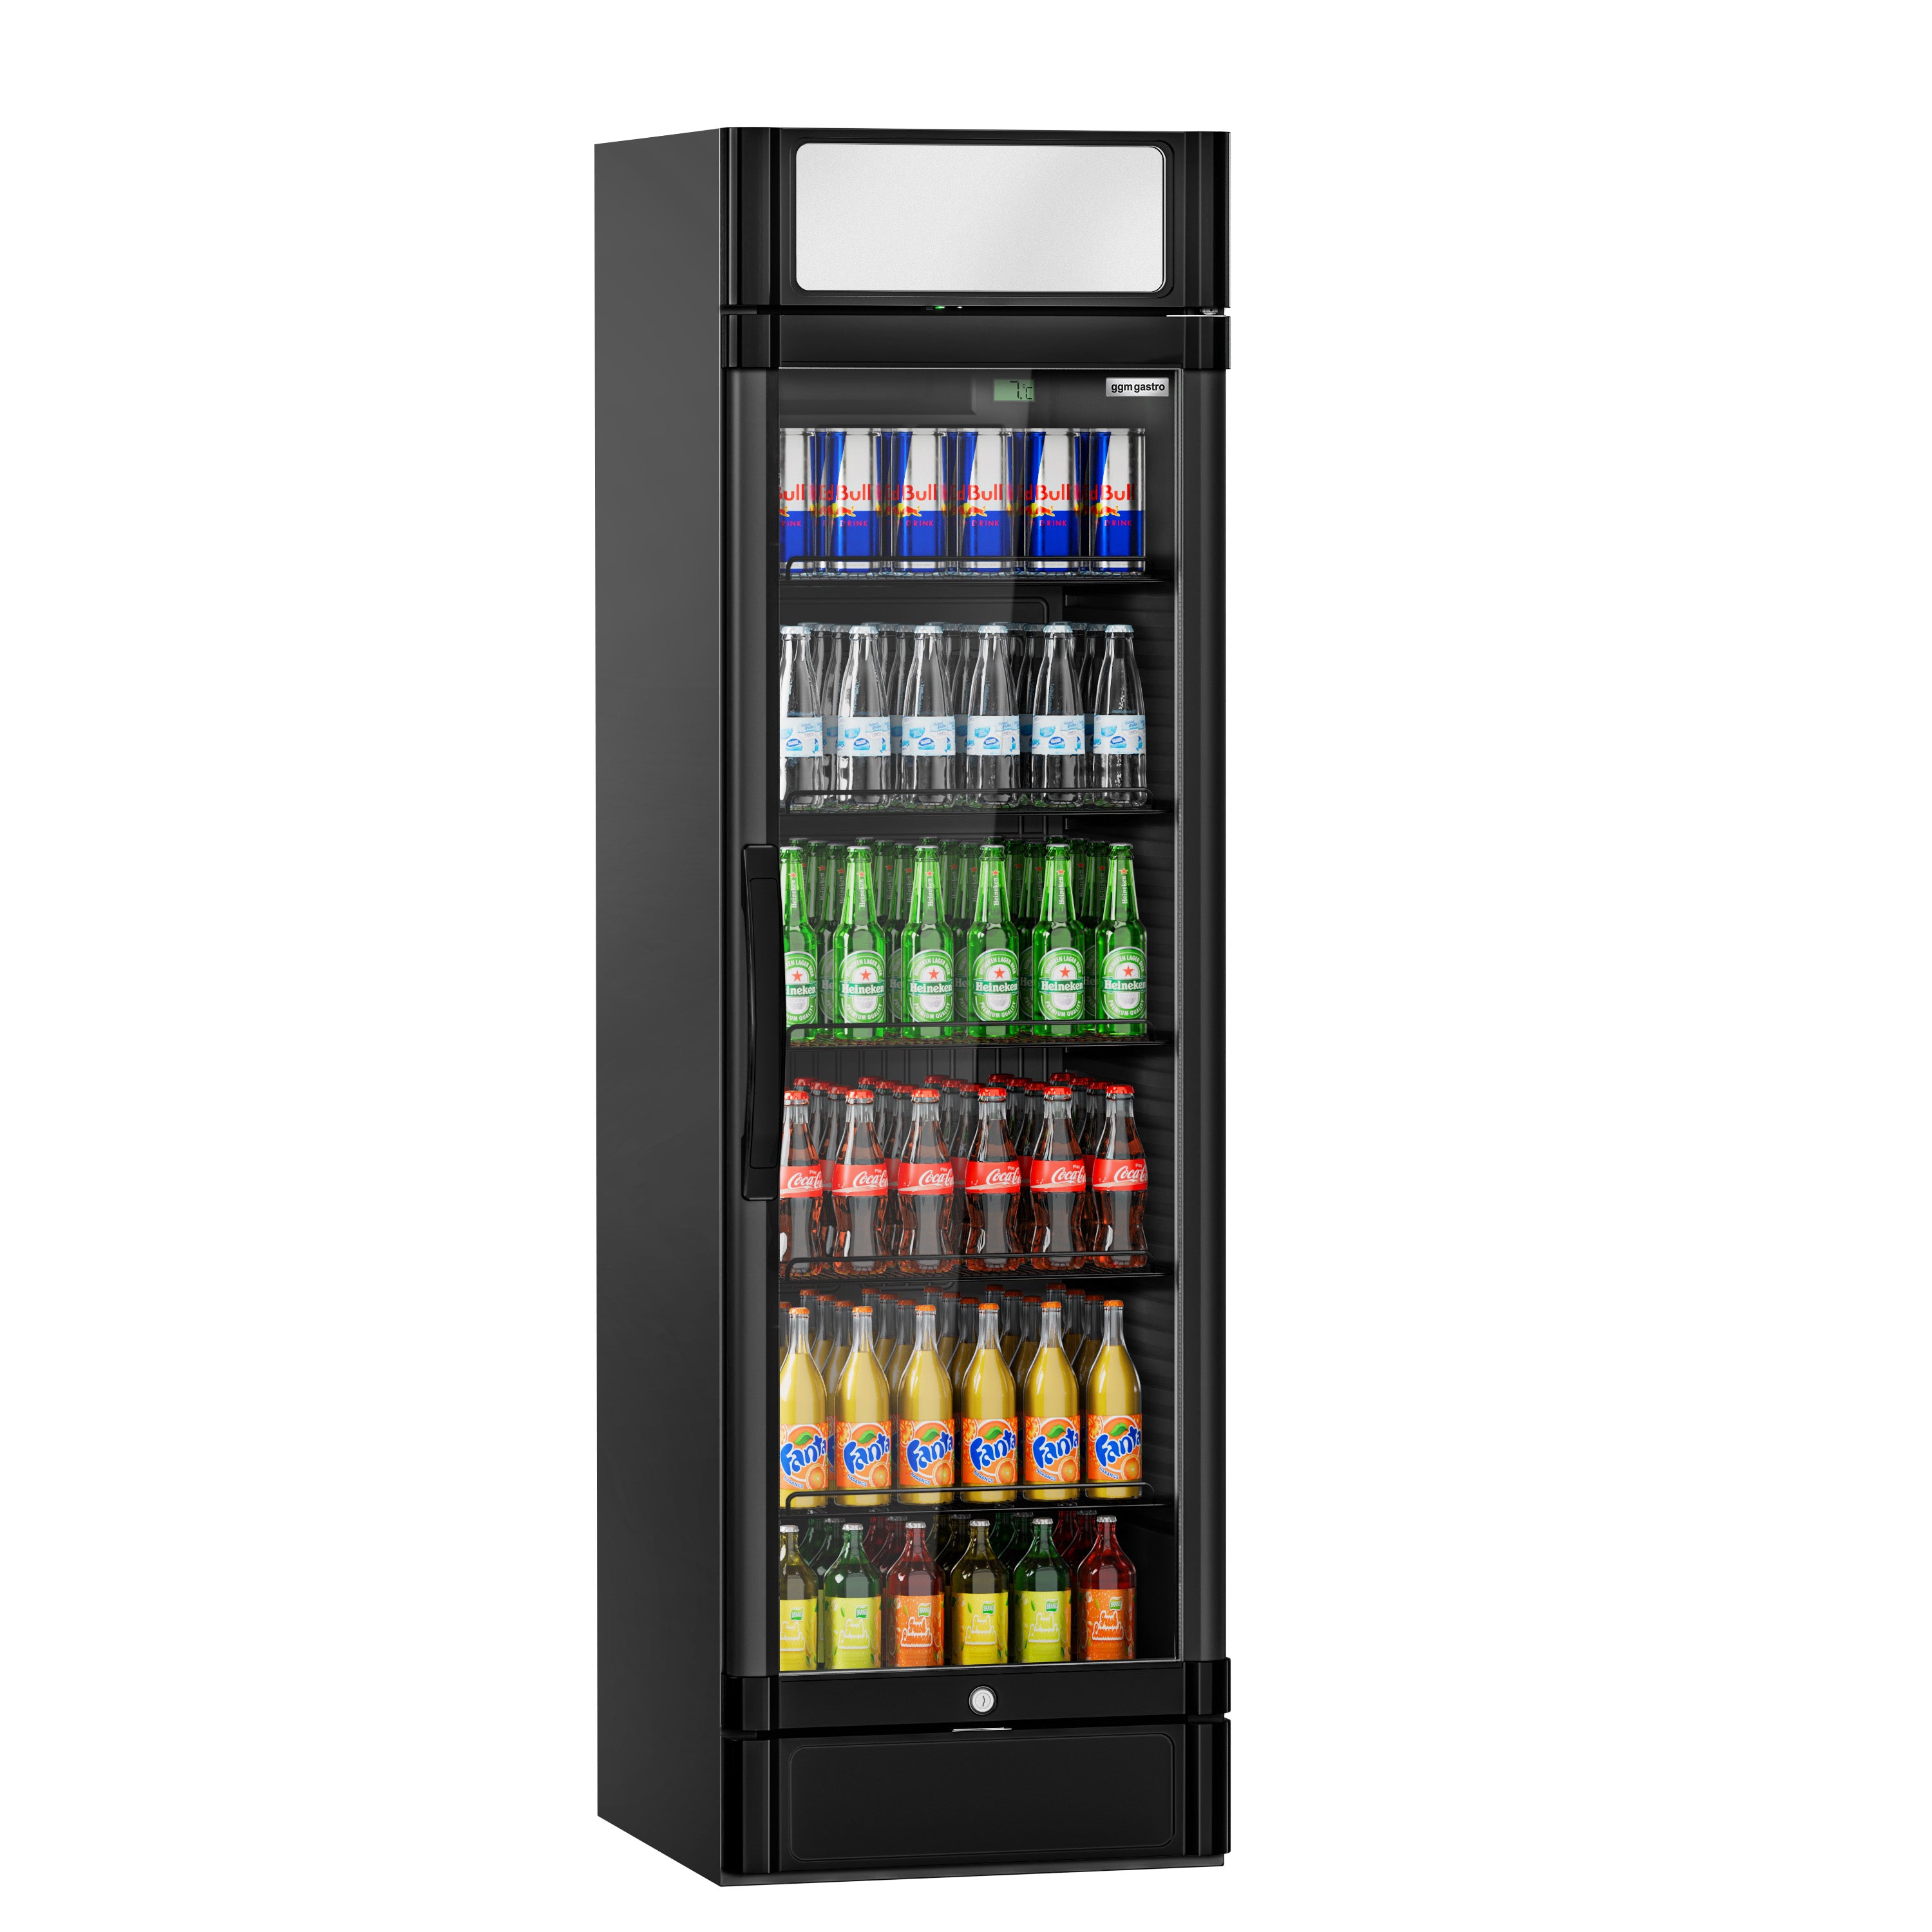 Хладилник за напитки - 347 литра (нетен обем) - ЧЕРЕН